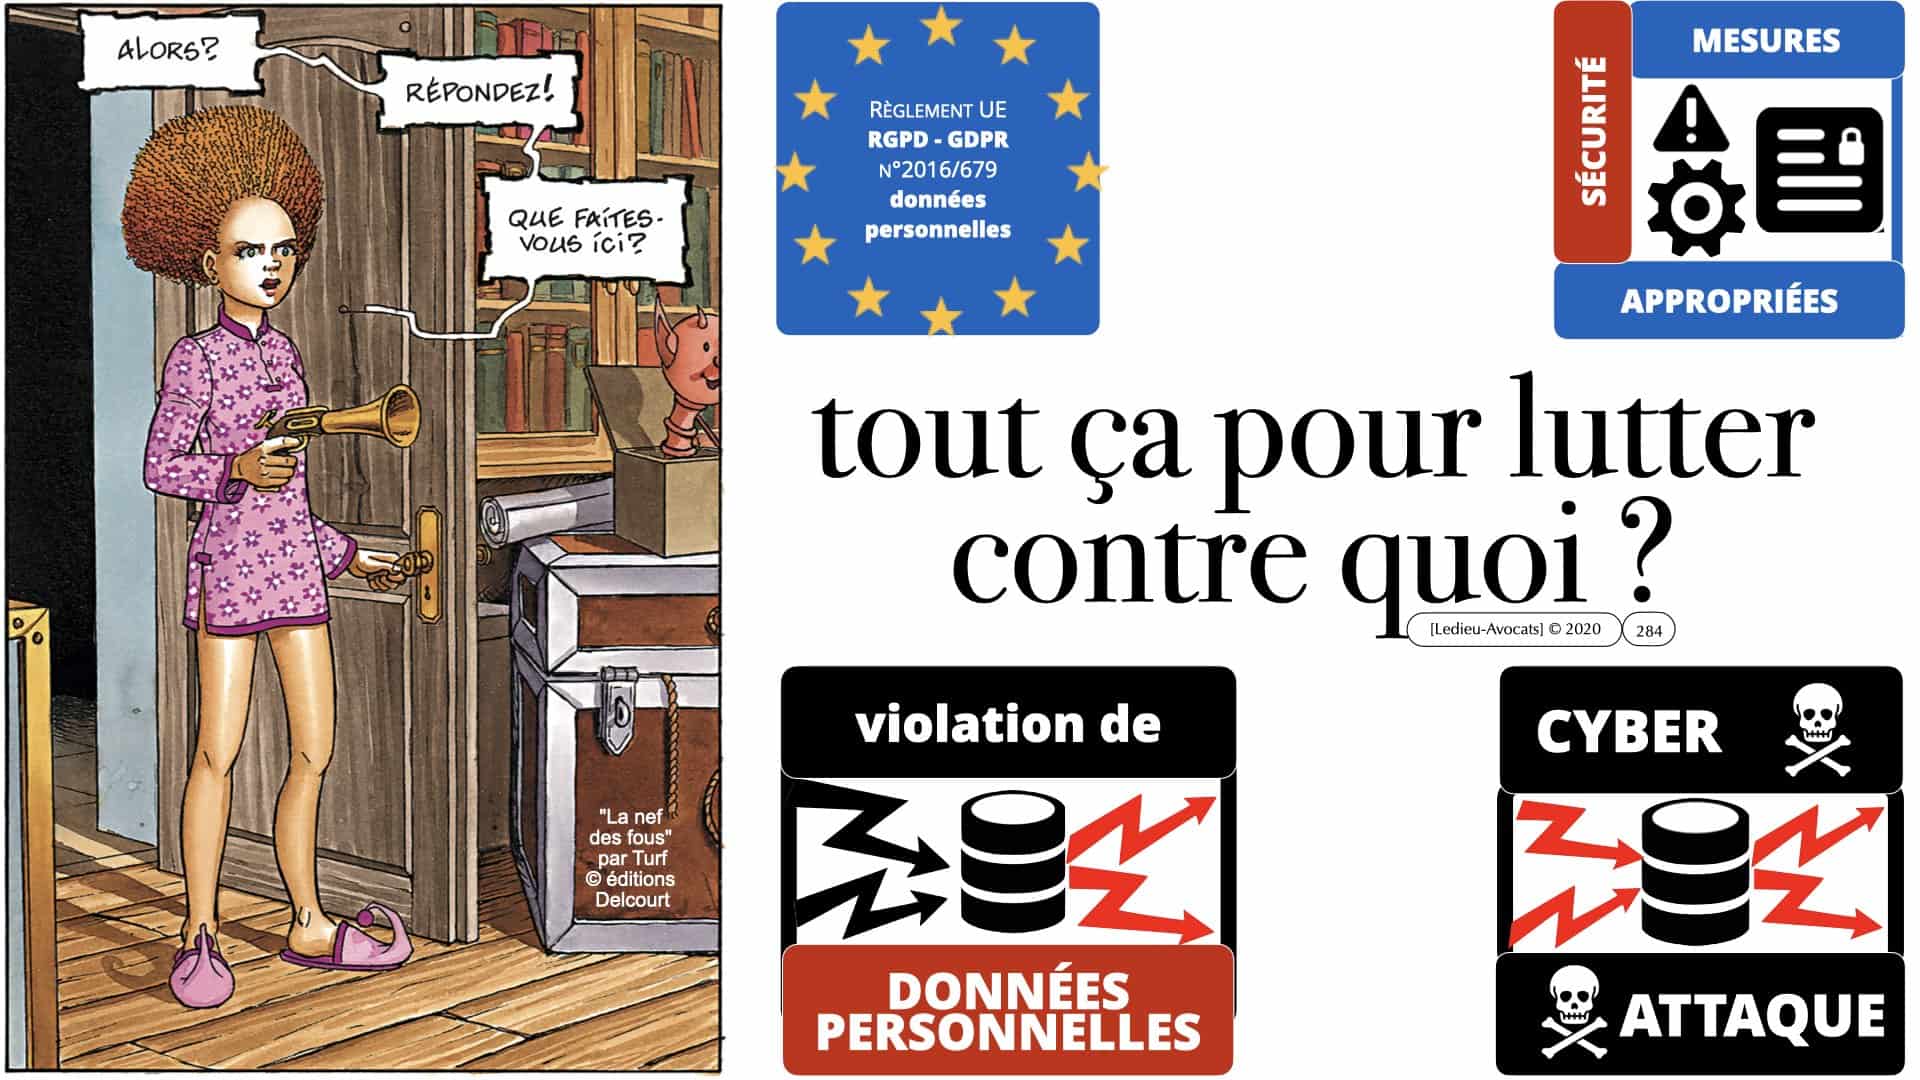 RGPD e-Privacy données personnelles jurisprudence formation Lamy Les Echos 10-02-2021 ©Ledieu-Avocats.284